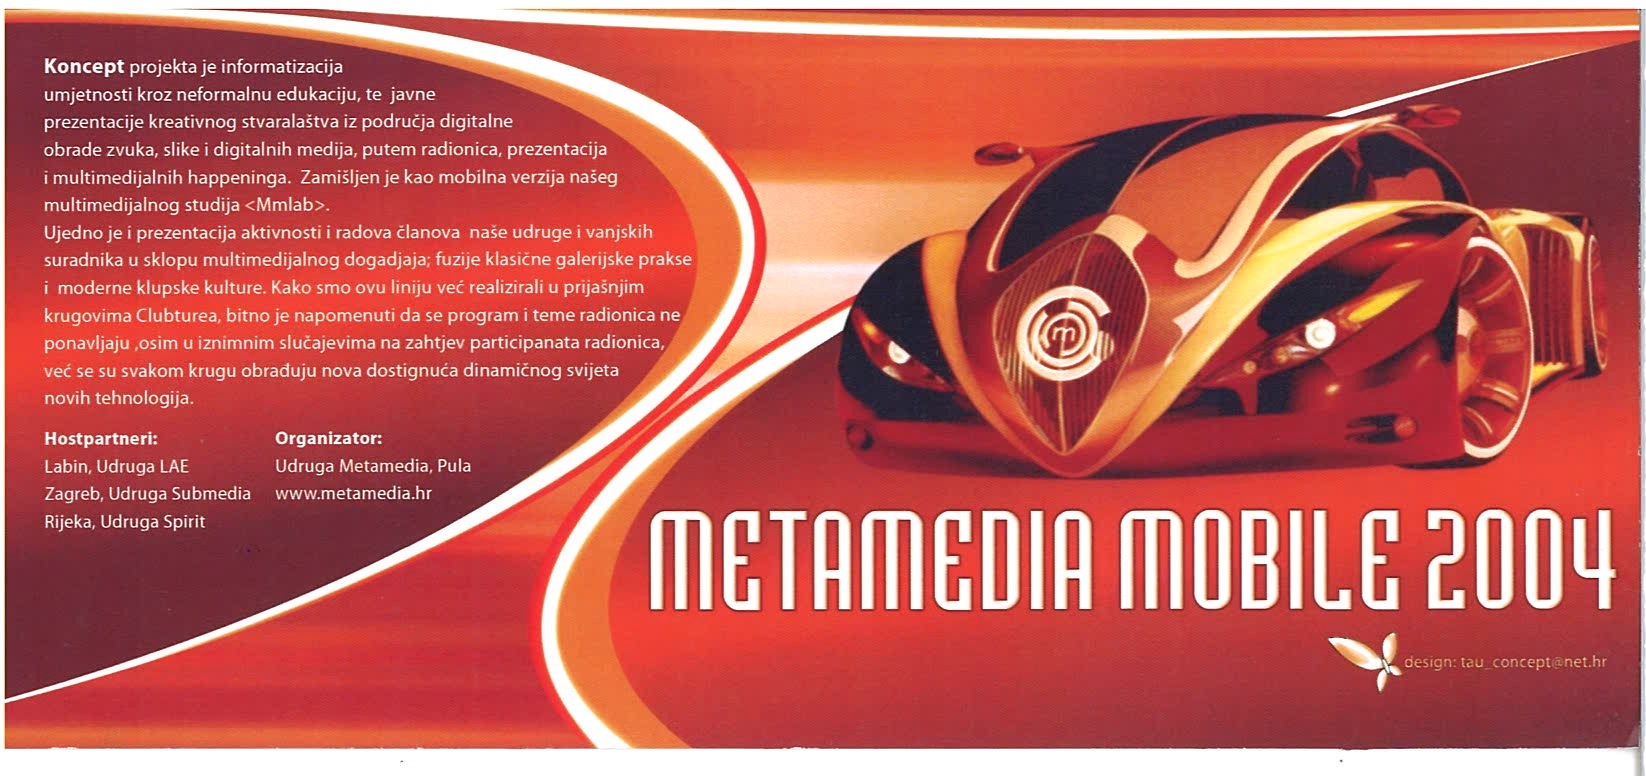 Metamedia mobile 2004 prednji